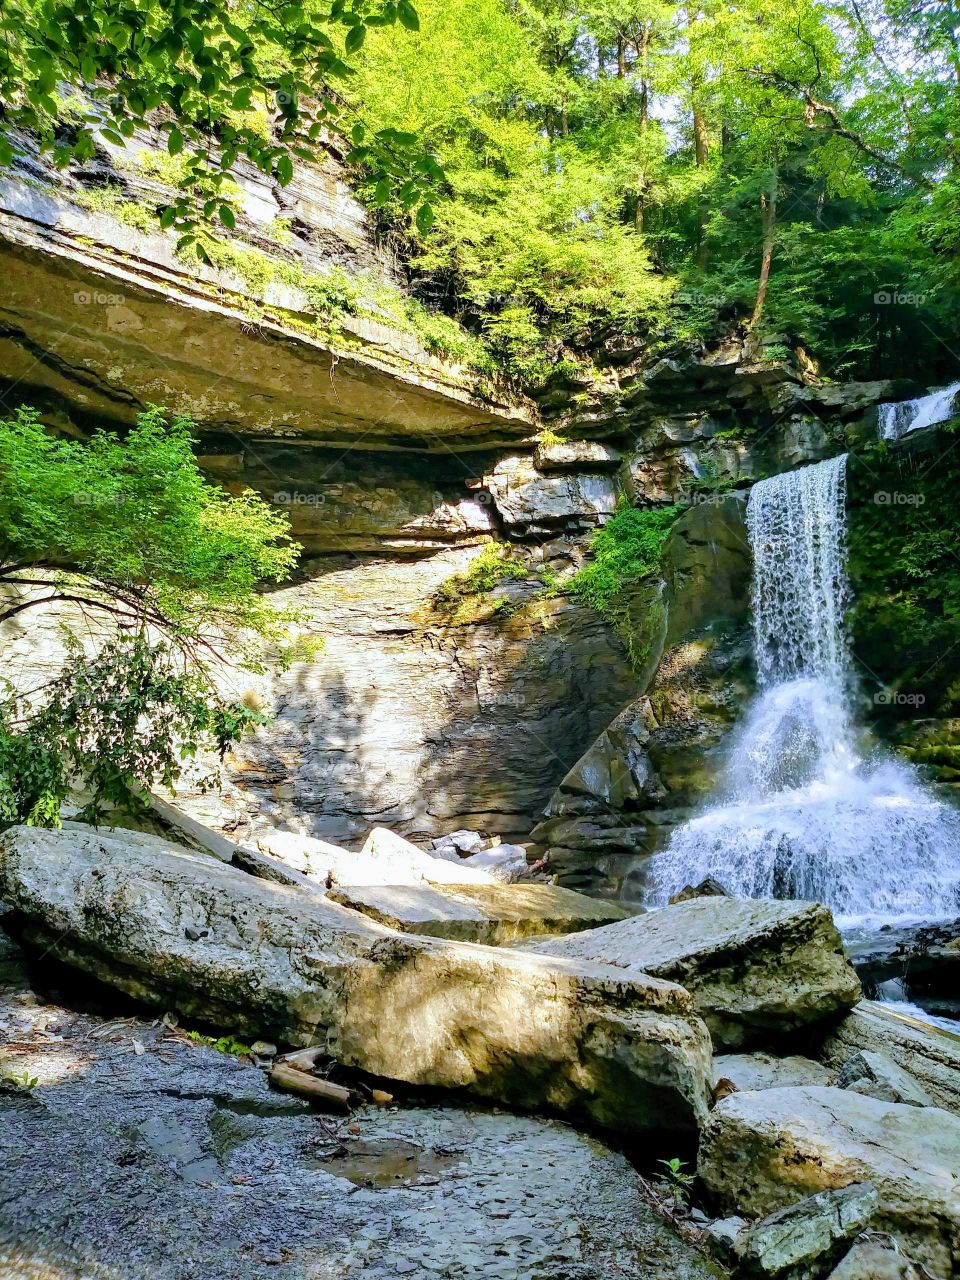 Waterfall at Filmore Glen